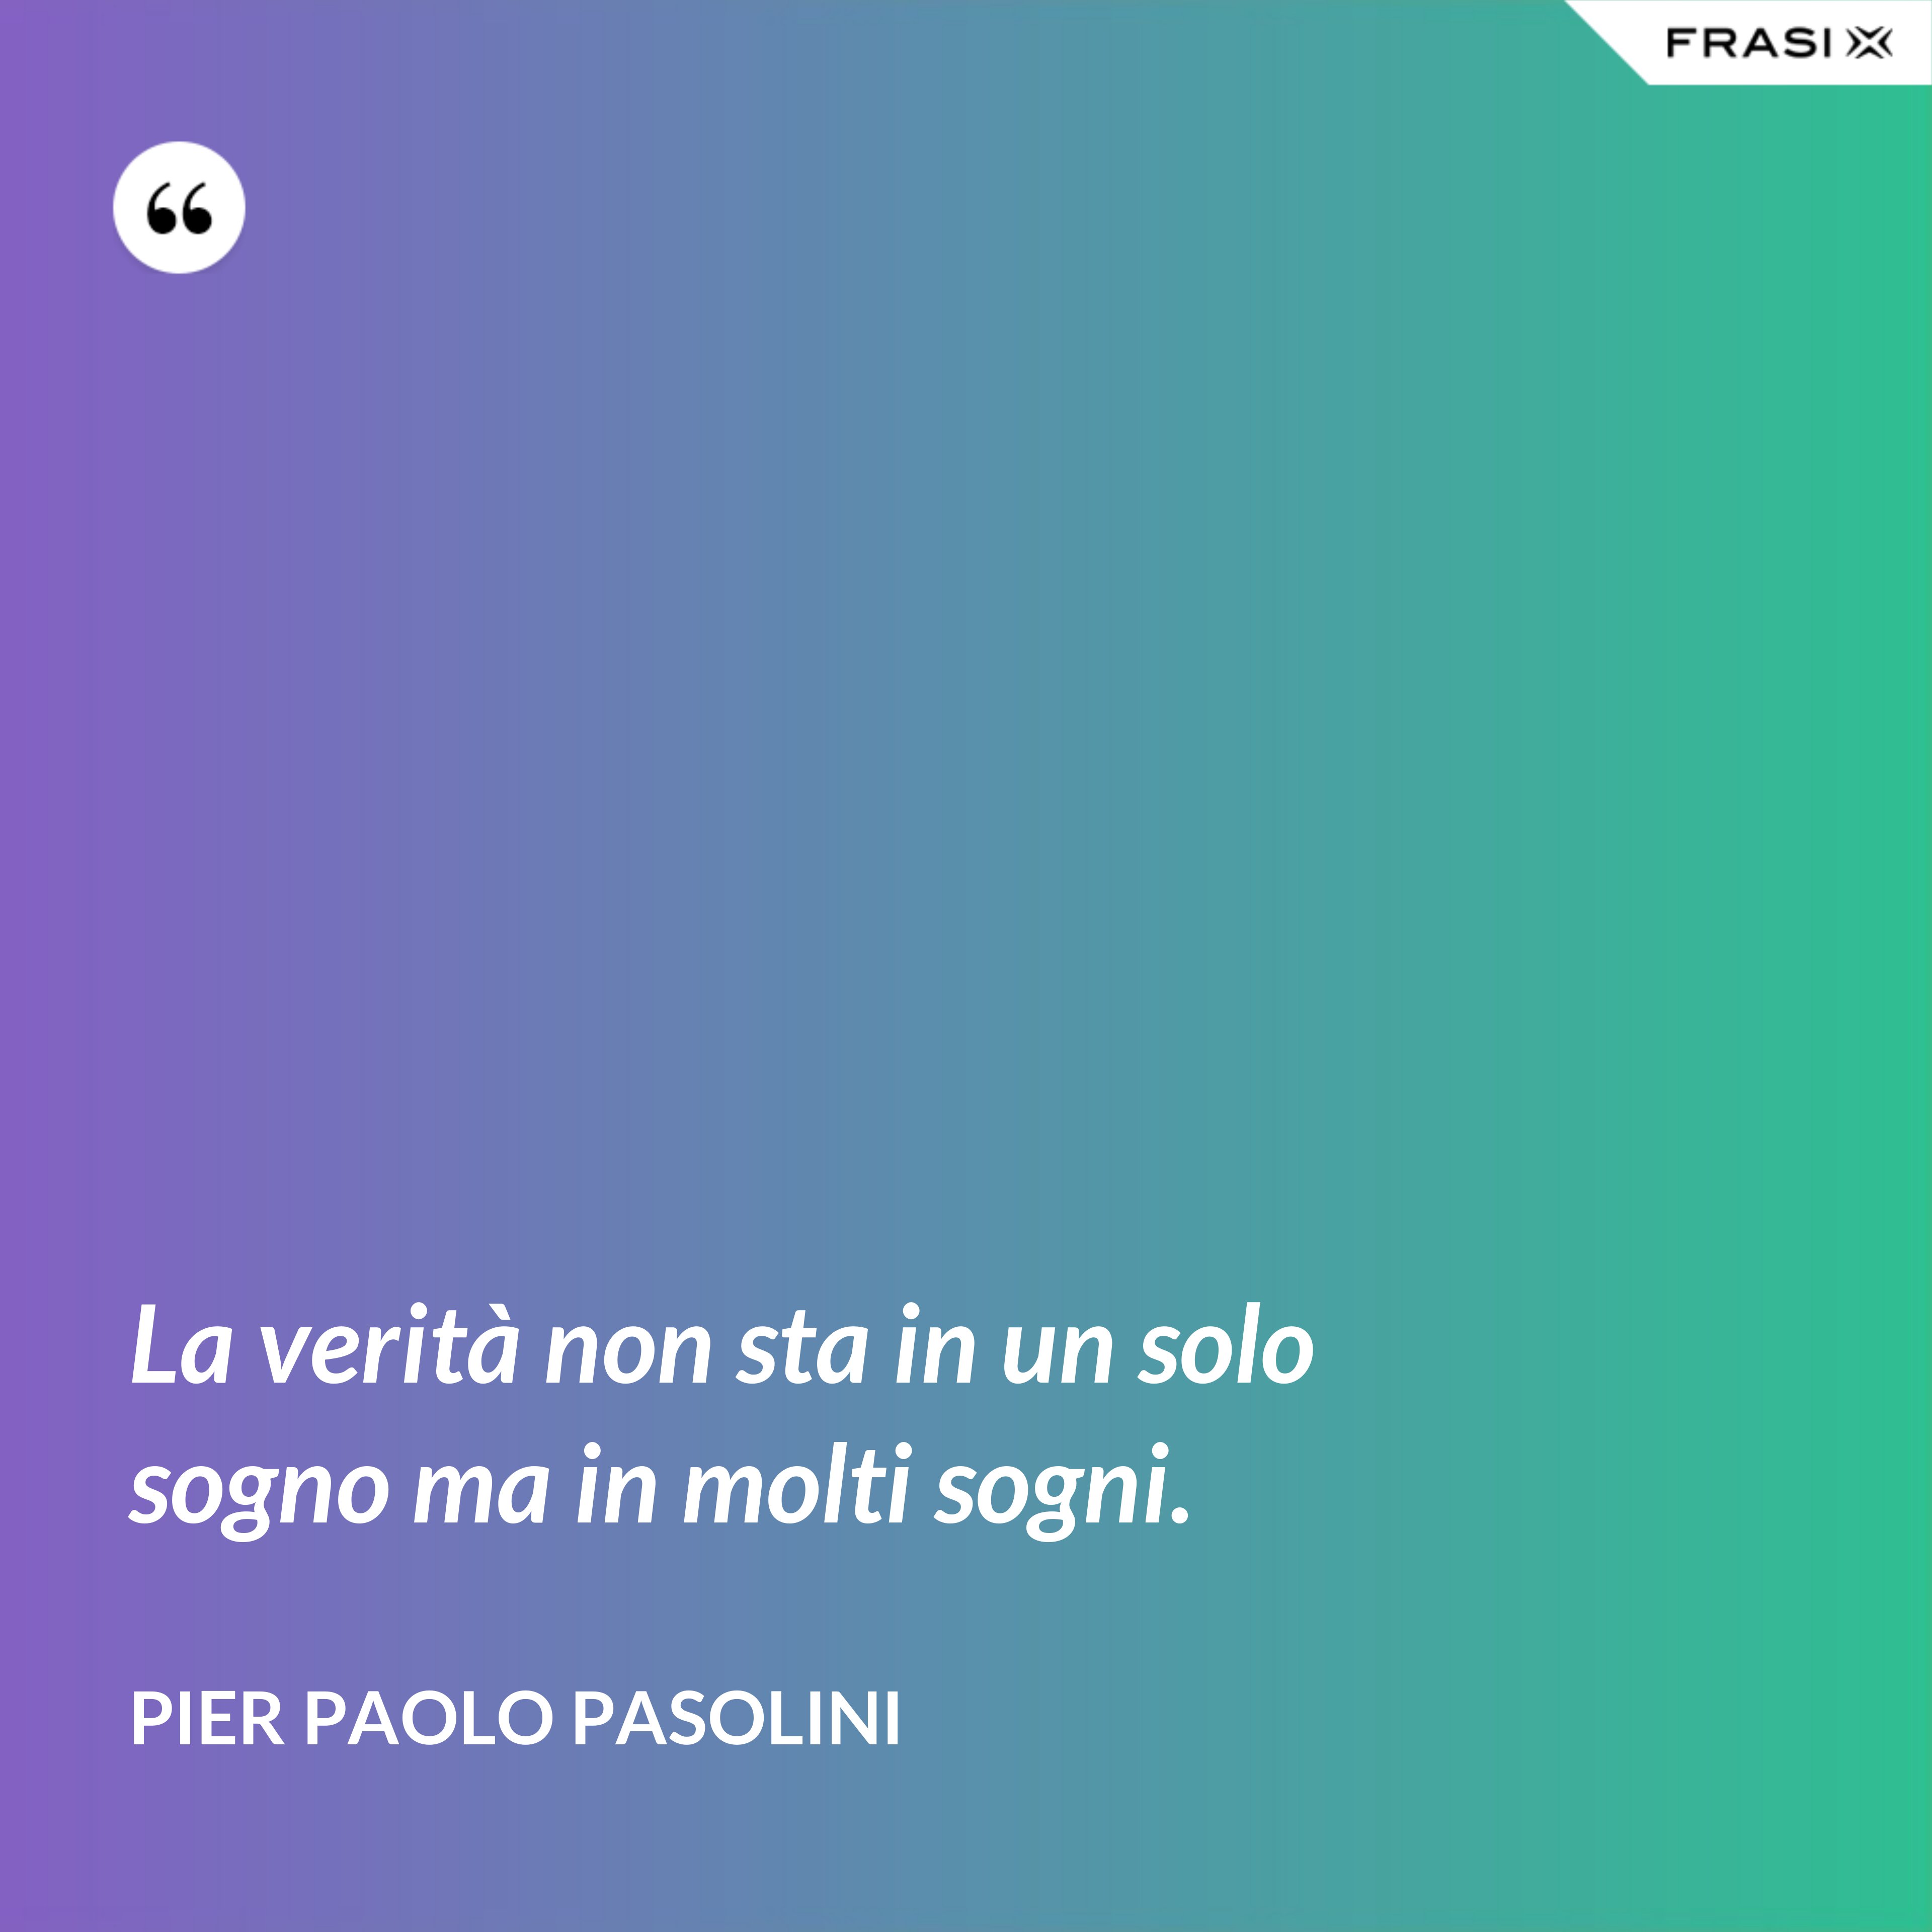 La verità non sta in un solo sogno ma in molti sogni. - Pier Paolo Pasolini